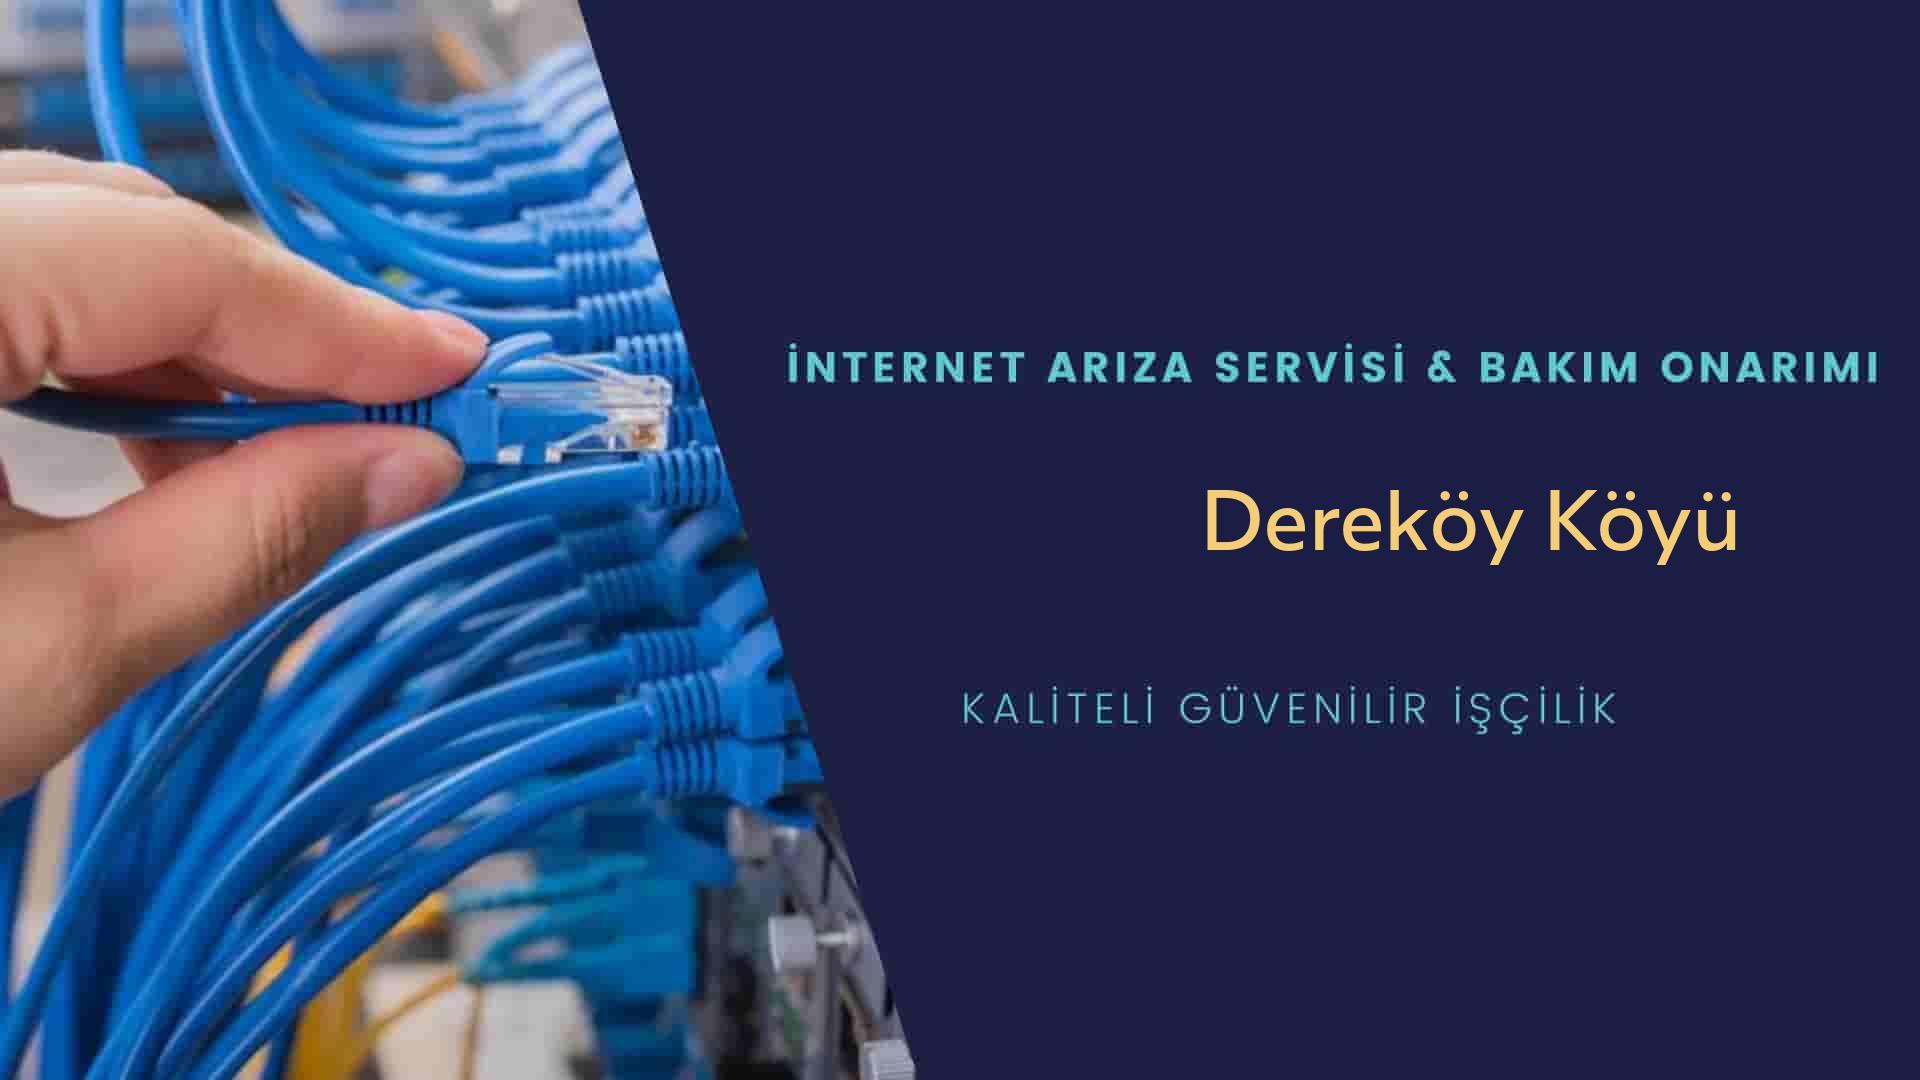 Dereköy Köyü internet kablosu çekimi yapan yerler veya elektrikçiler mi? arıyorsunuz doğru yerdesiniz o zaman sizlere 7/24 yardımcı olacak profesyonel ustalarımız bir telefon kadar yakındır size.